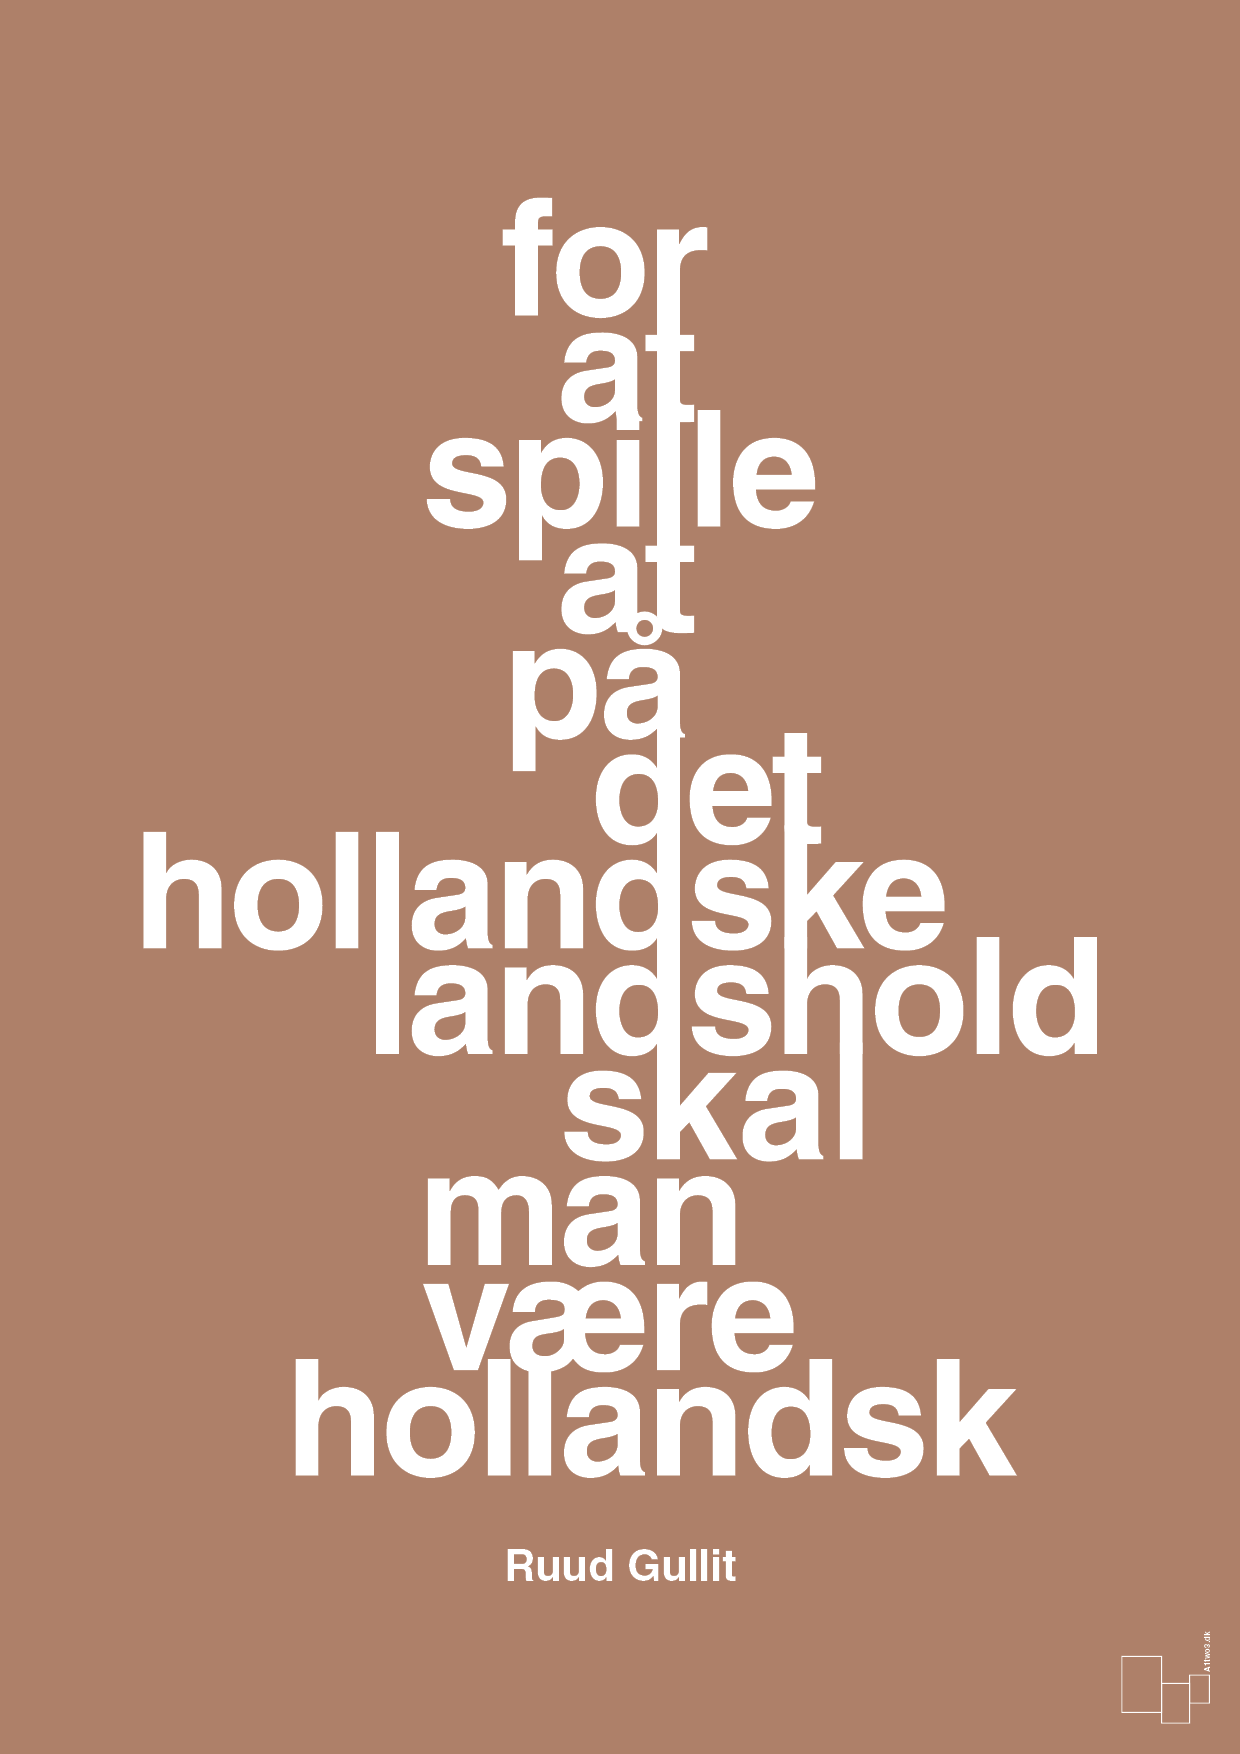 for at spille på det hollandske landshold skal man være hollandsk - Plakat med Citater i Cider Spice